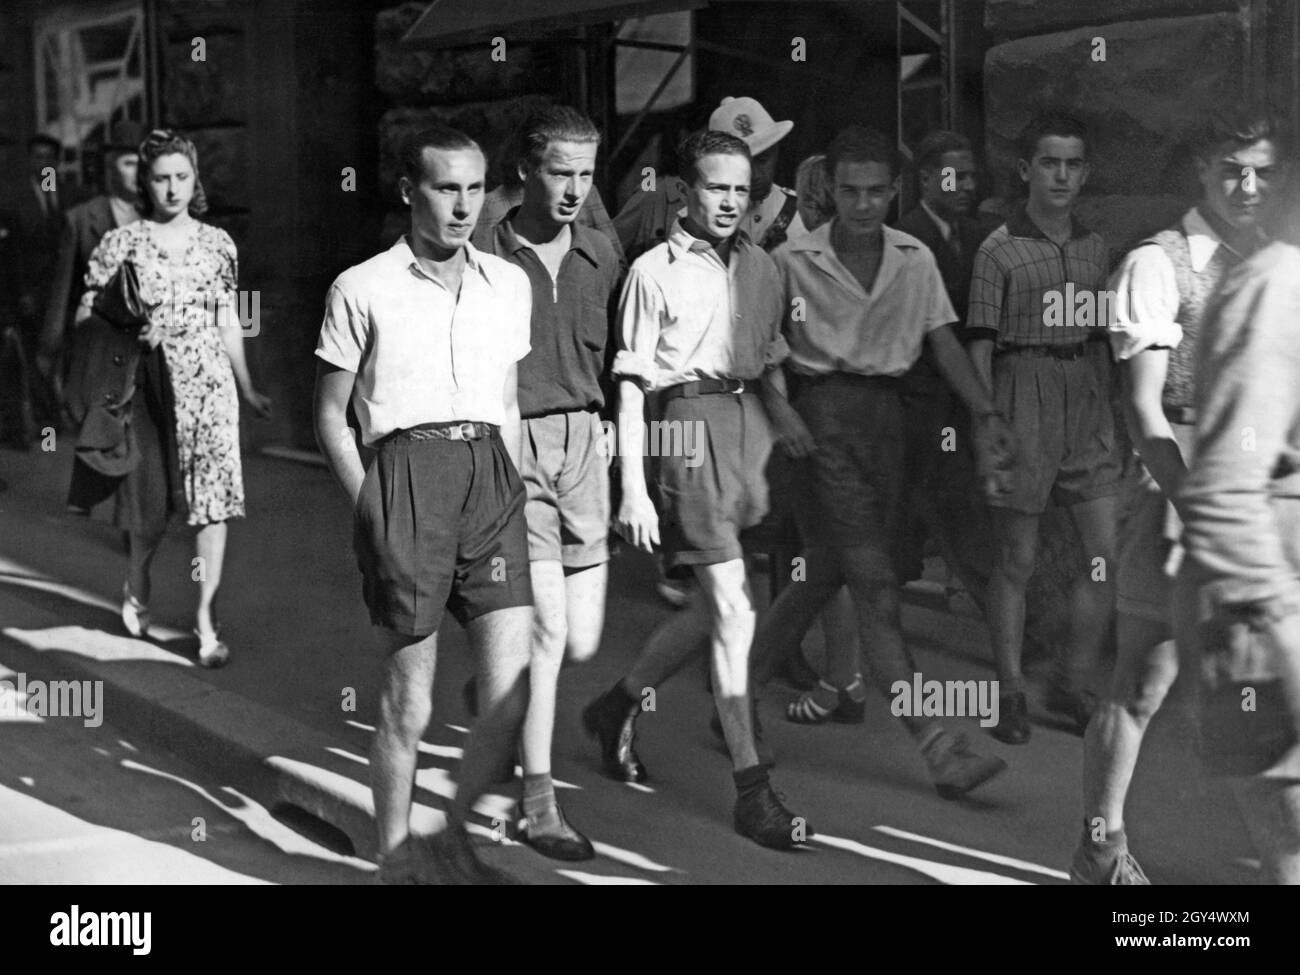 Nel 1940 fu data una nuova moda ai giovani italiani: Non si indossavano più abiti non essenziali come le cravatte. Si indossavano solo calzini corti e i ragazzi indossavano pantaloncini, come si vede nella foto, che probabilmente è stata presa a Roma. Questo era quello di salvare i tessili per l'economia di guerra. [traduzione automatizzata] Foto Stock